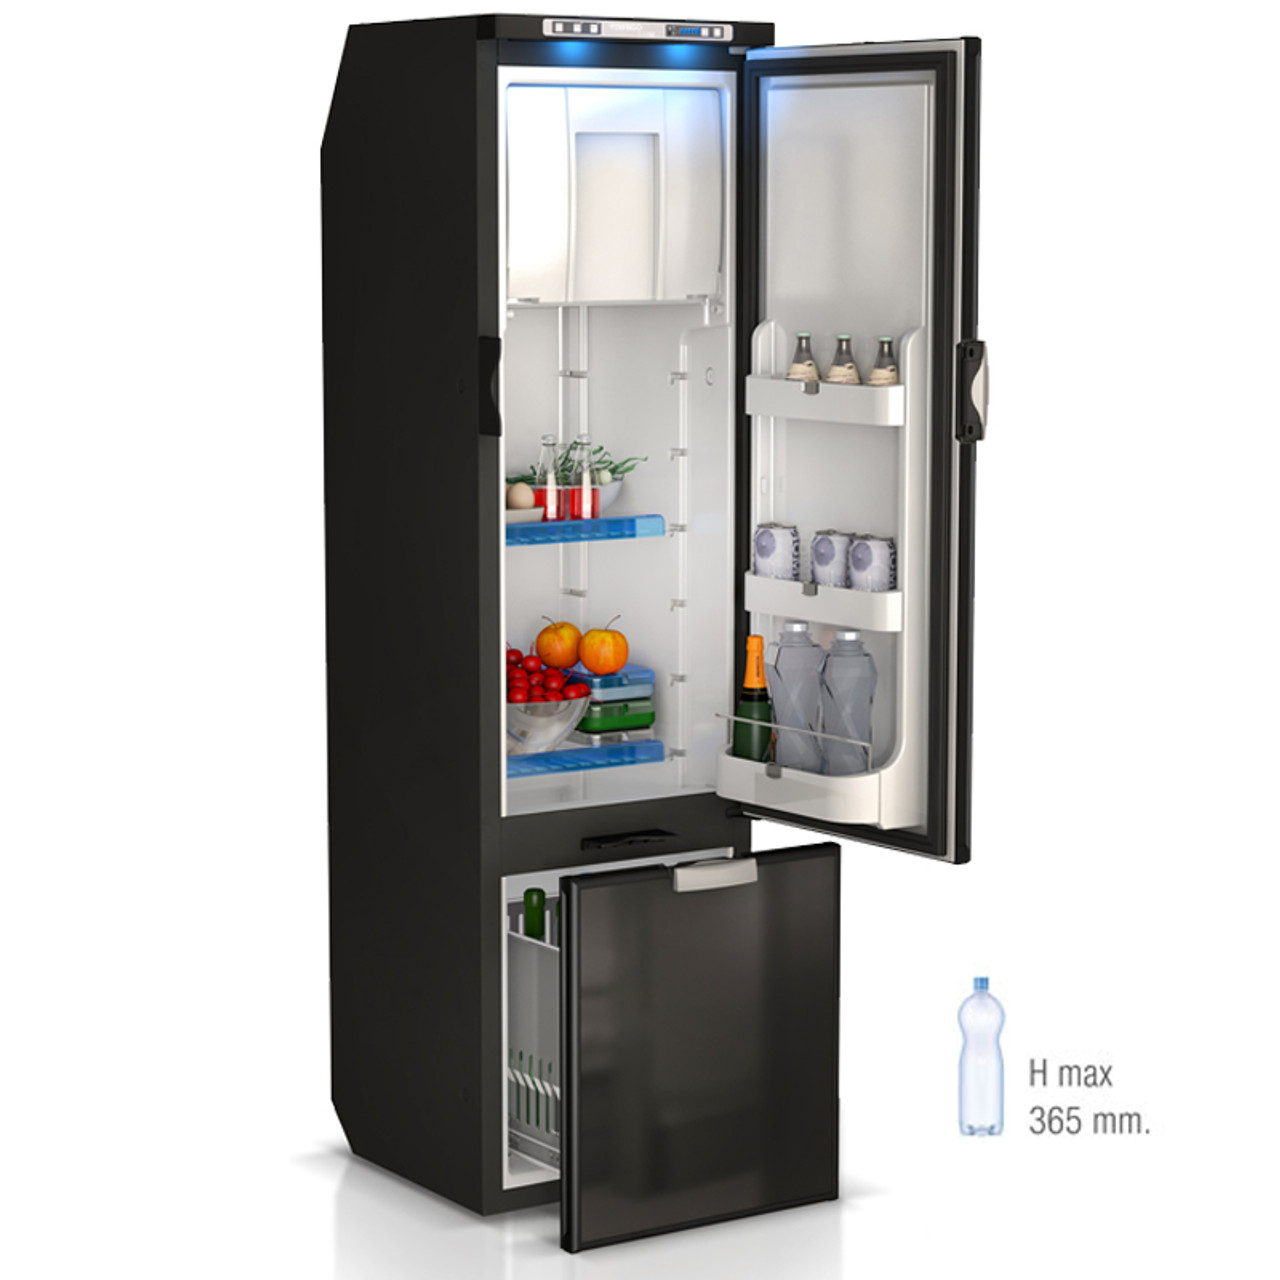 VITRIFRIGO Réfrigérateur Freezer 150L pour Camping-Car VTR5150 514602